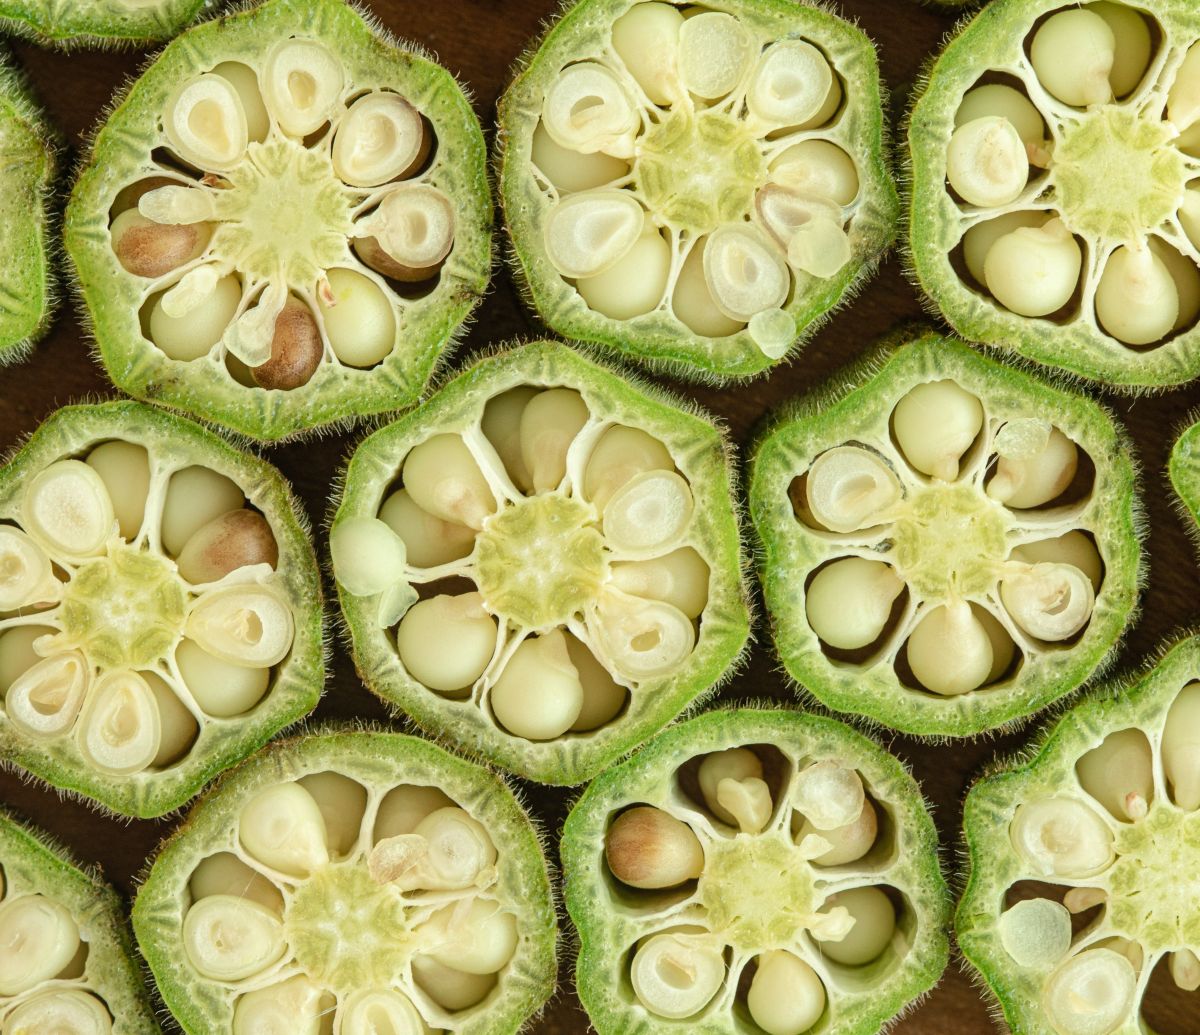 La okra es una verdura con muchas propiedades.